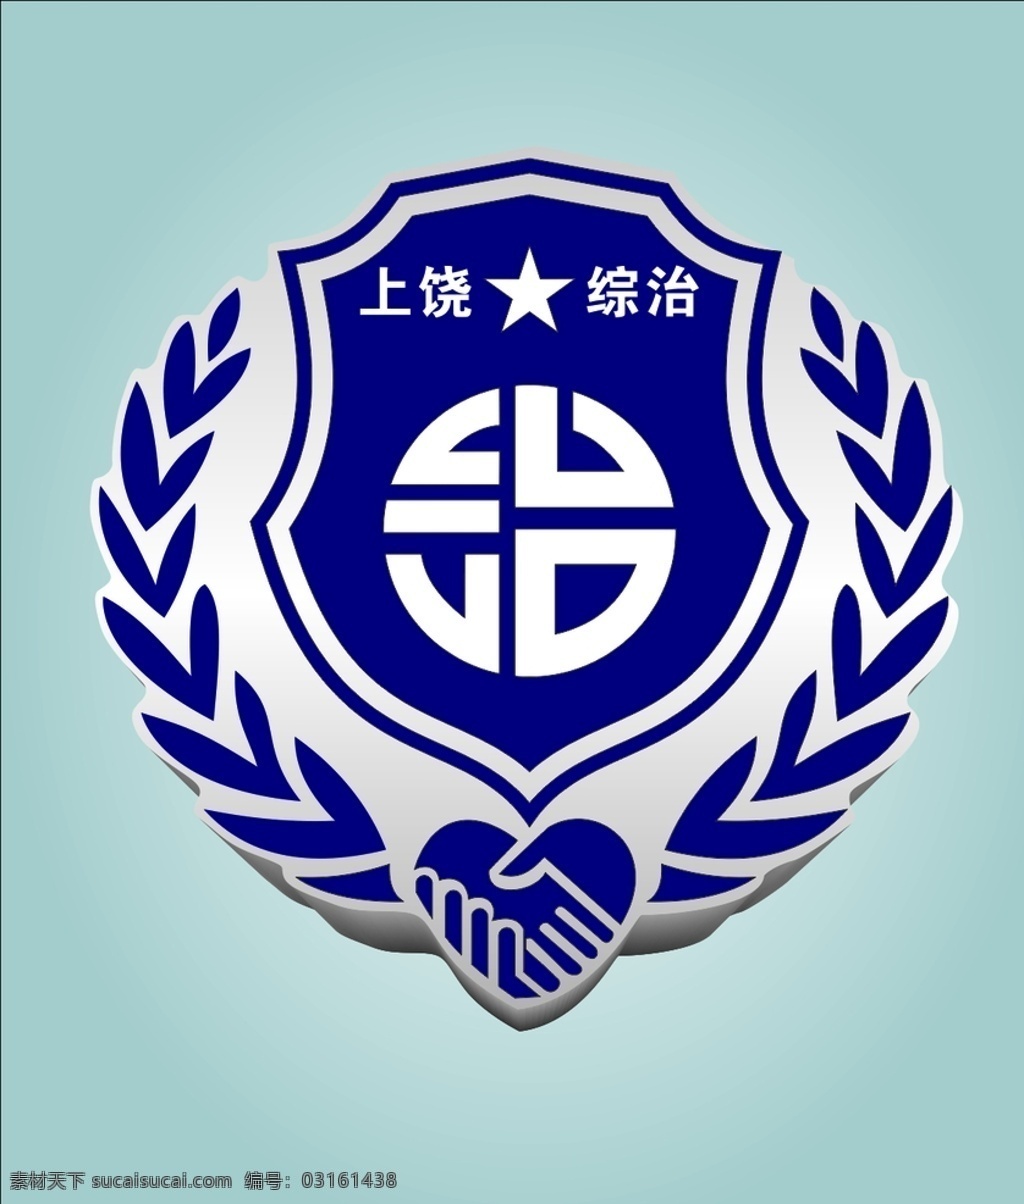 2020 年 上饶 综治 标志 标徽 标志图标 企业 logo